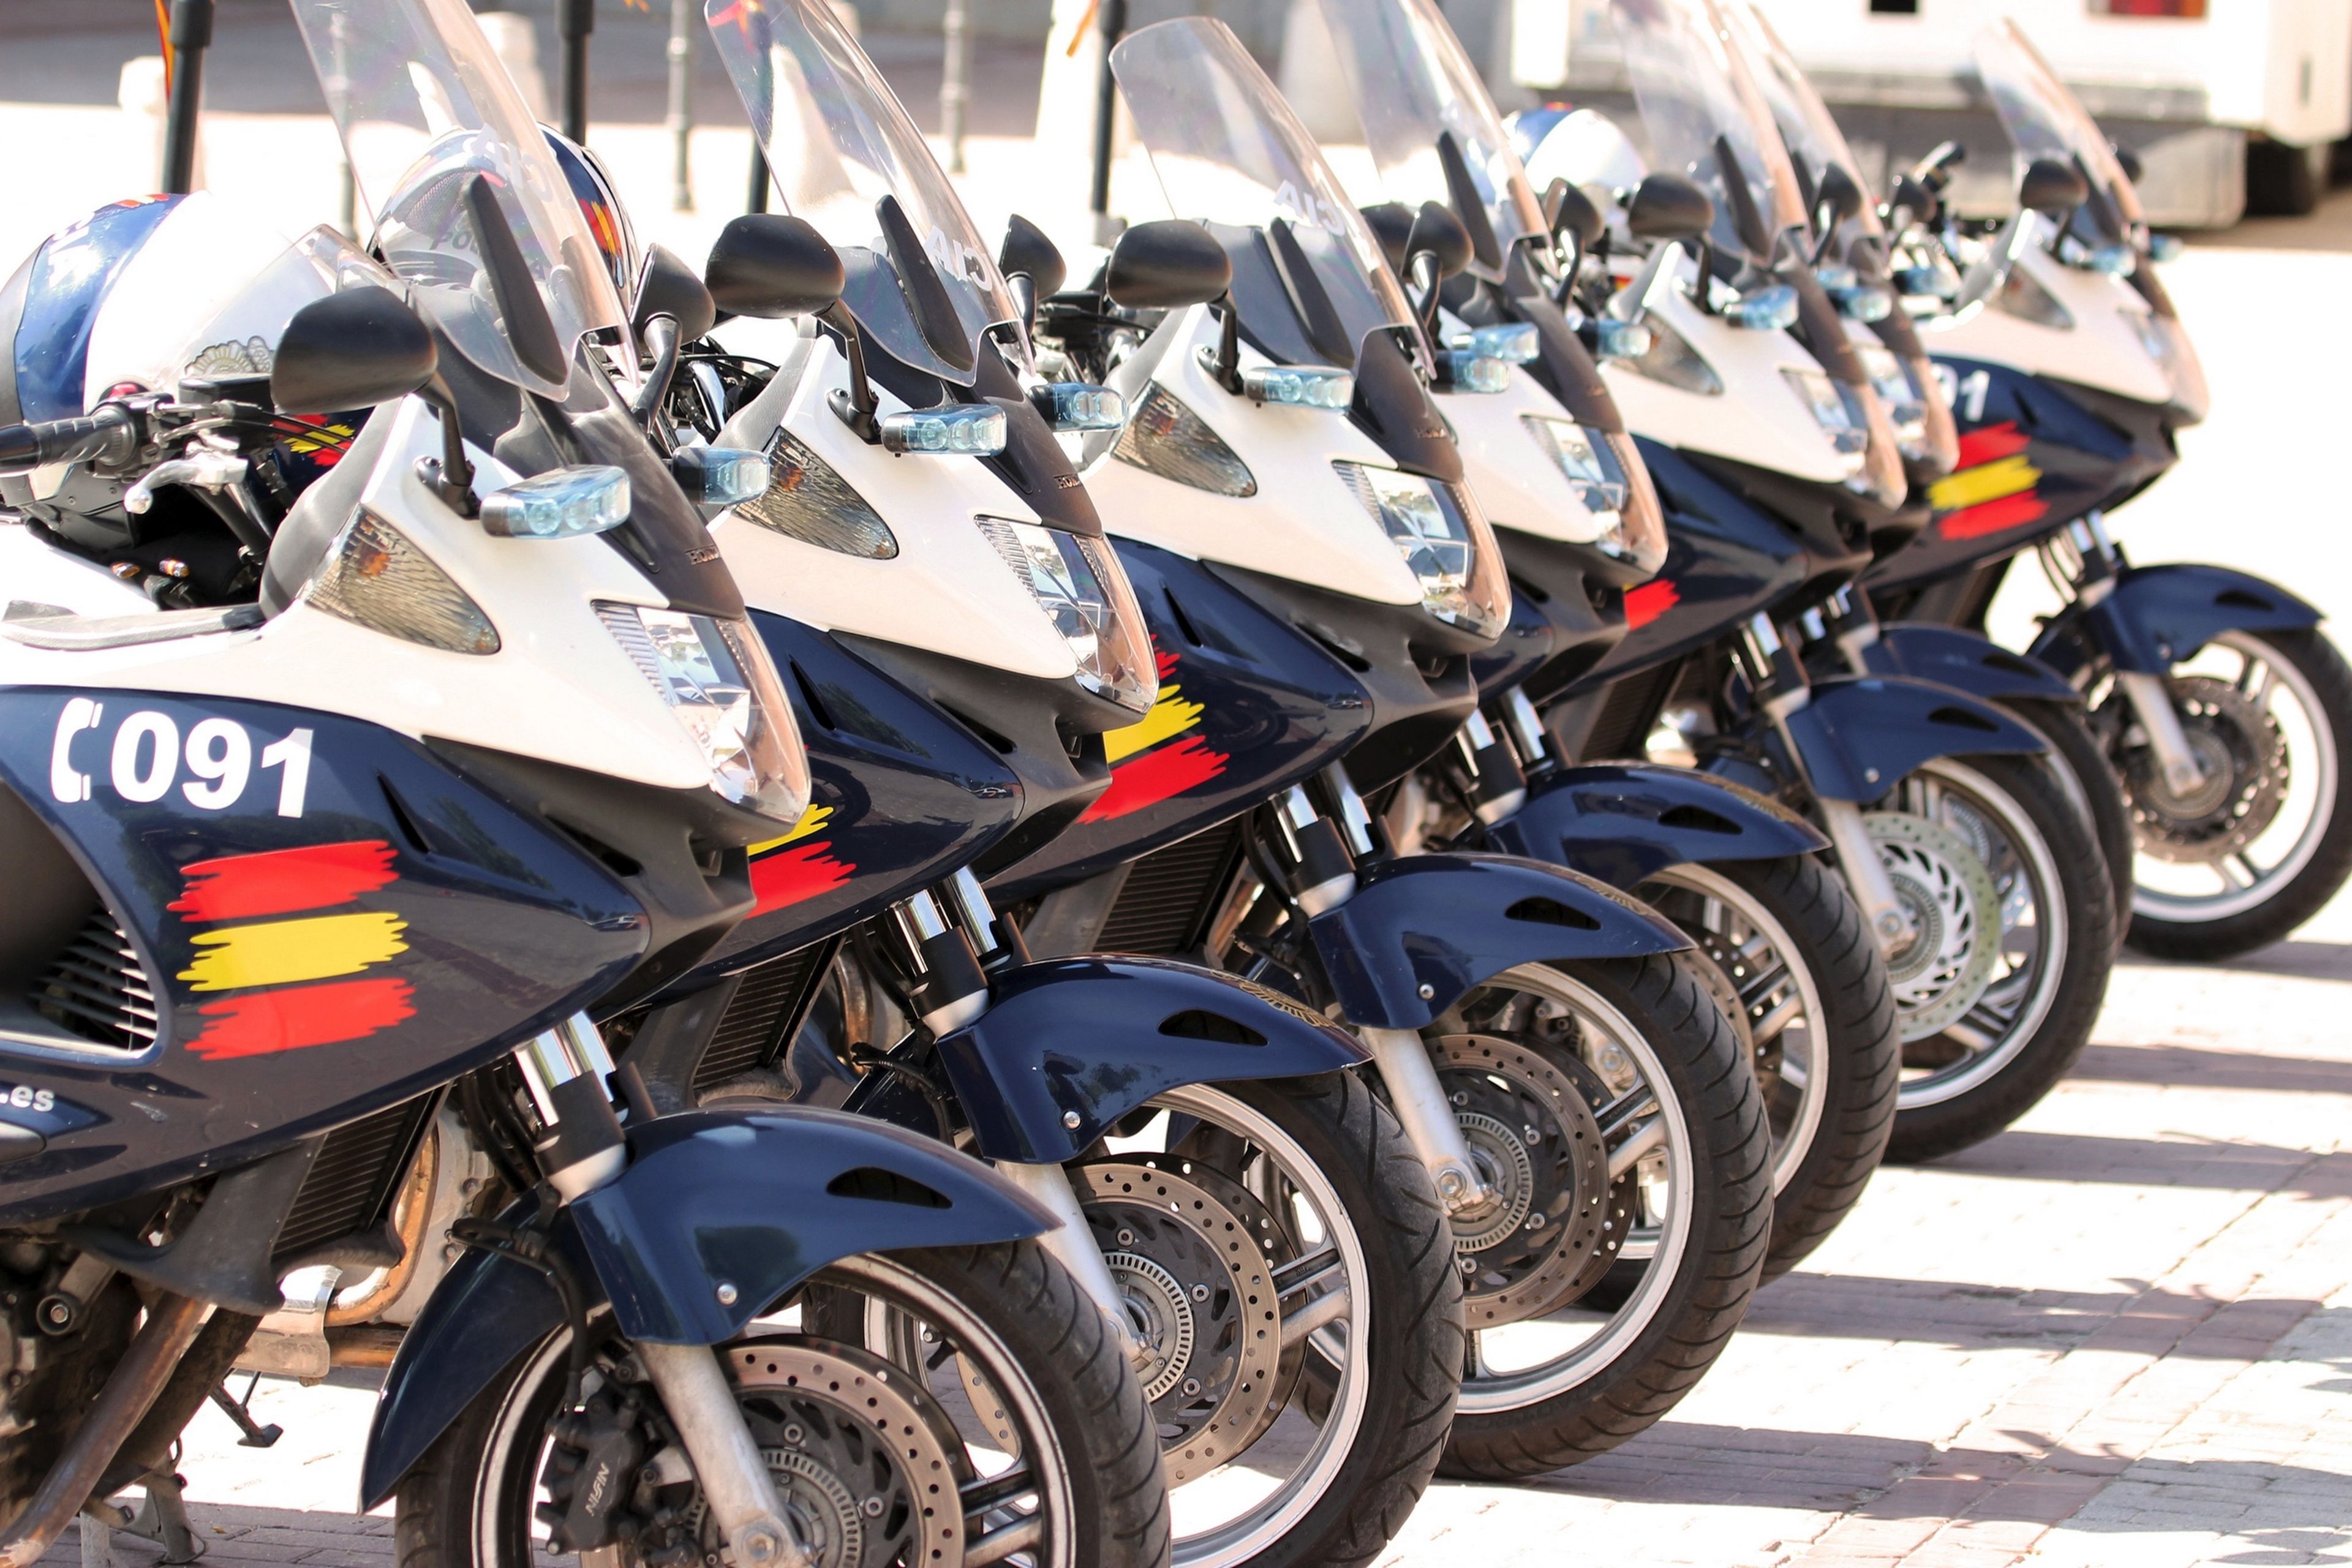 La Policía Nacional estrena sus primeras motos eléctricas, todas serán así a partir de ahora